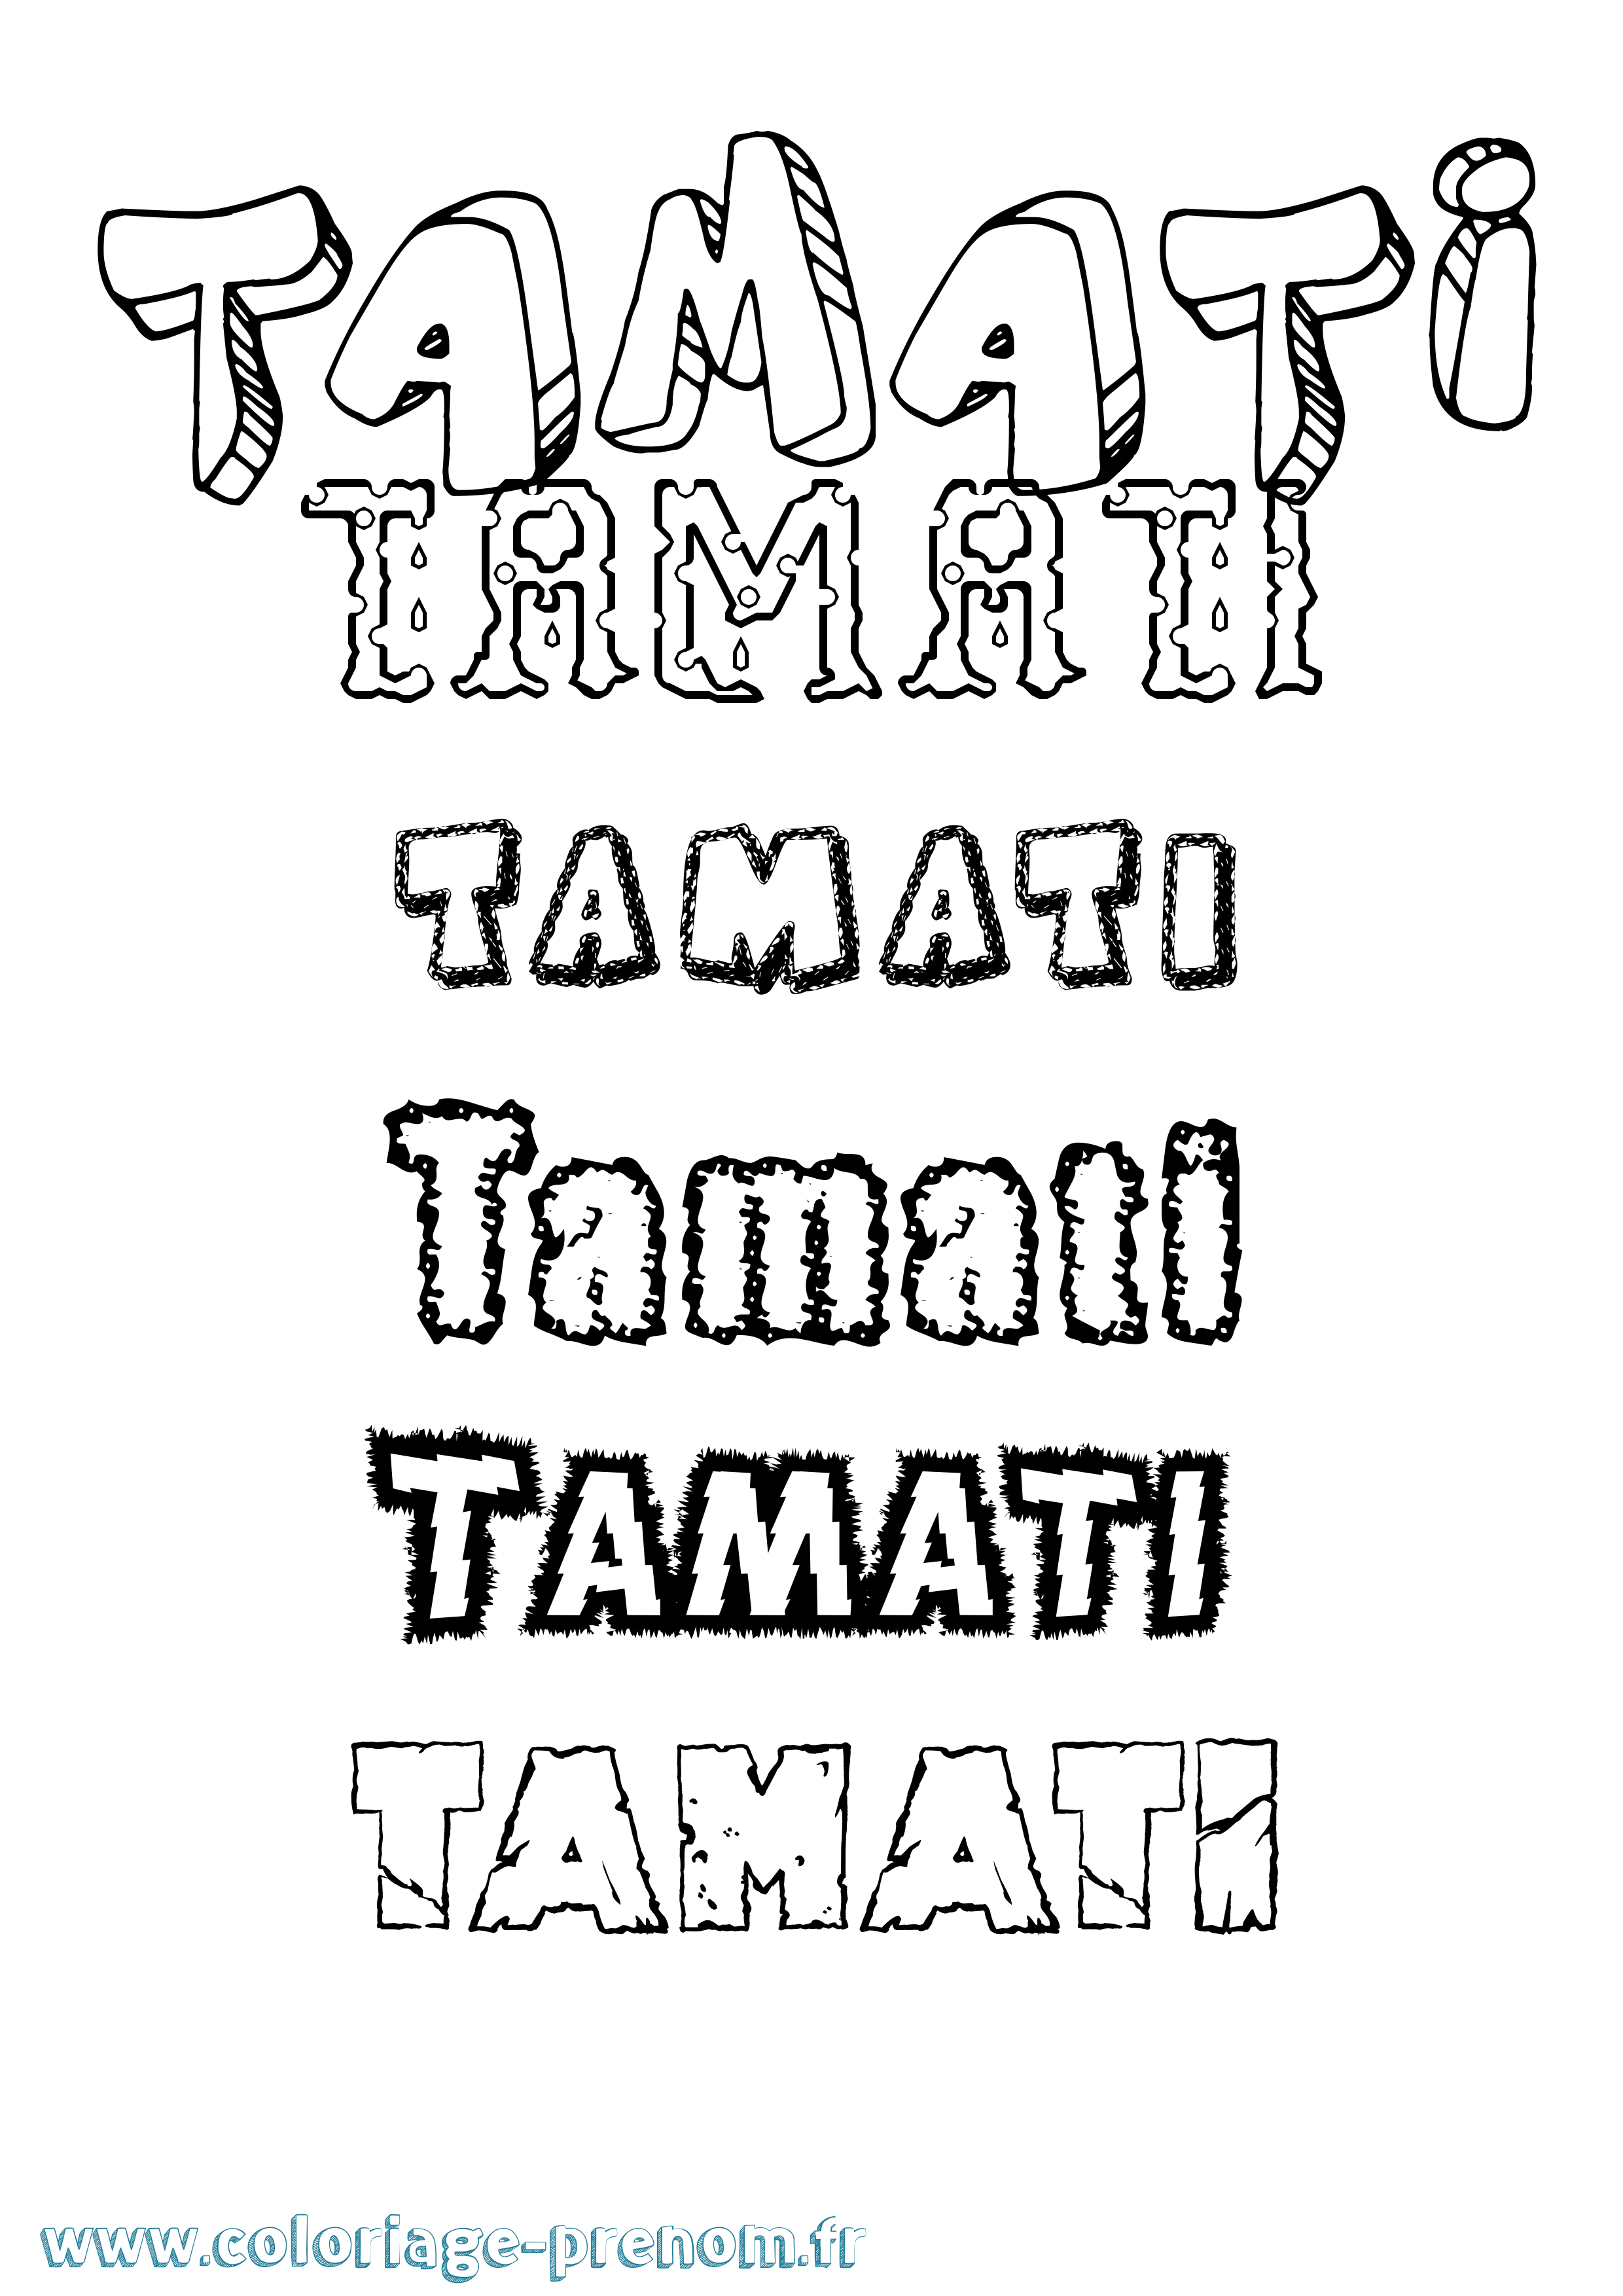 Coloriage prénom Tamati Destructuré